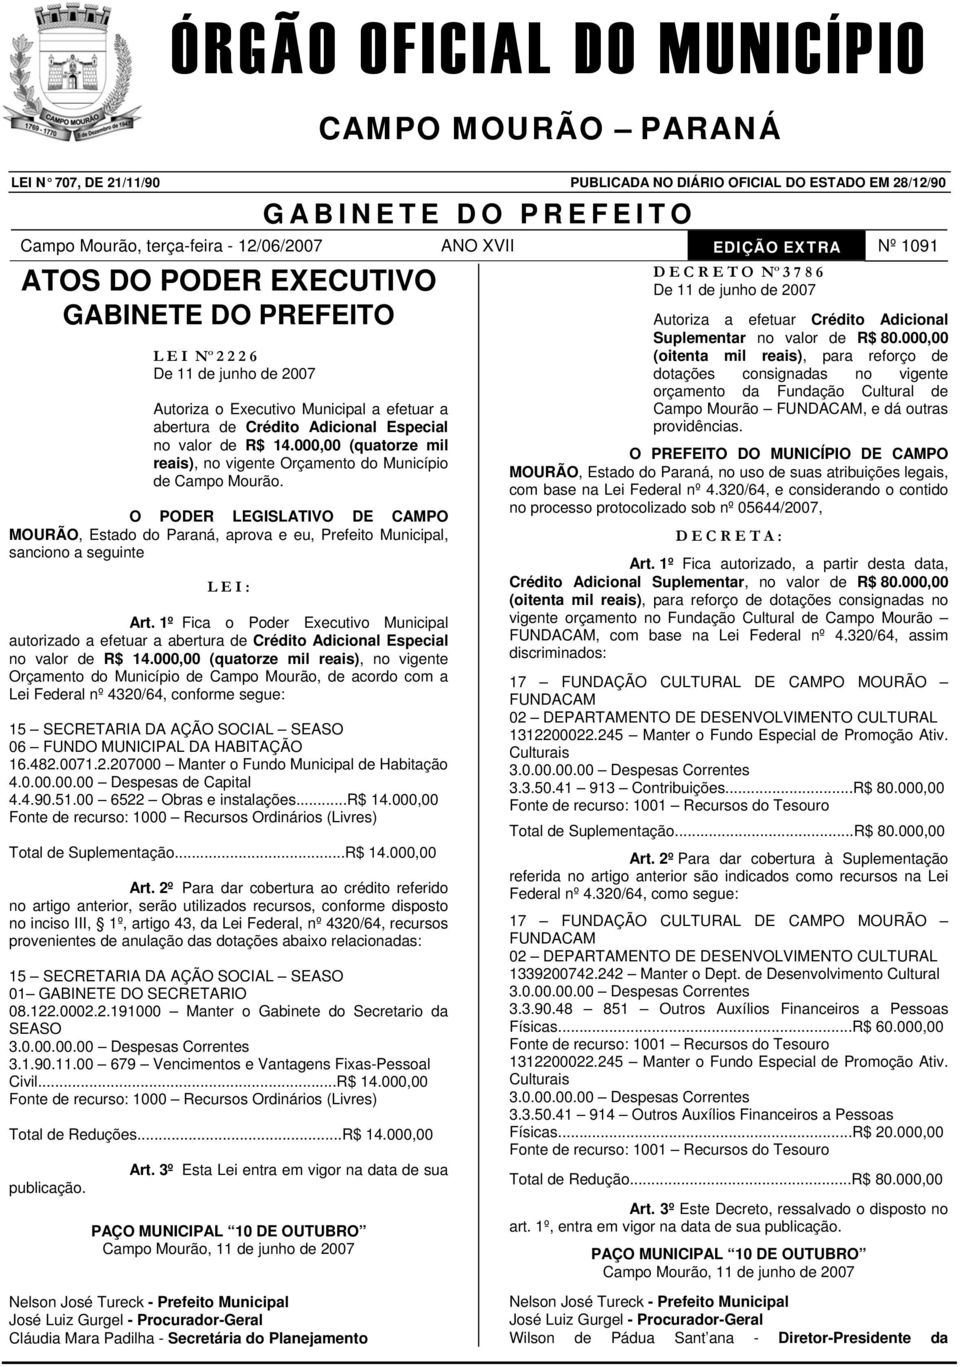 1º Fica Pder Executiv Municipal autrizad a efetuar a abertura de Crédit Adicinal Especial n valr de R$ 14.